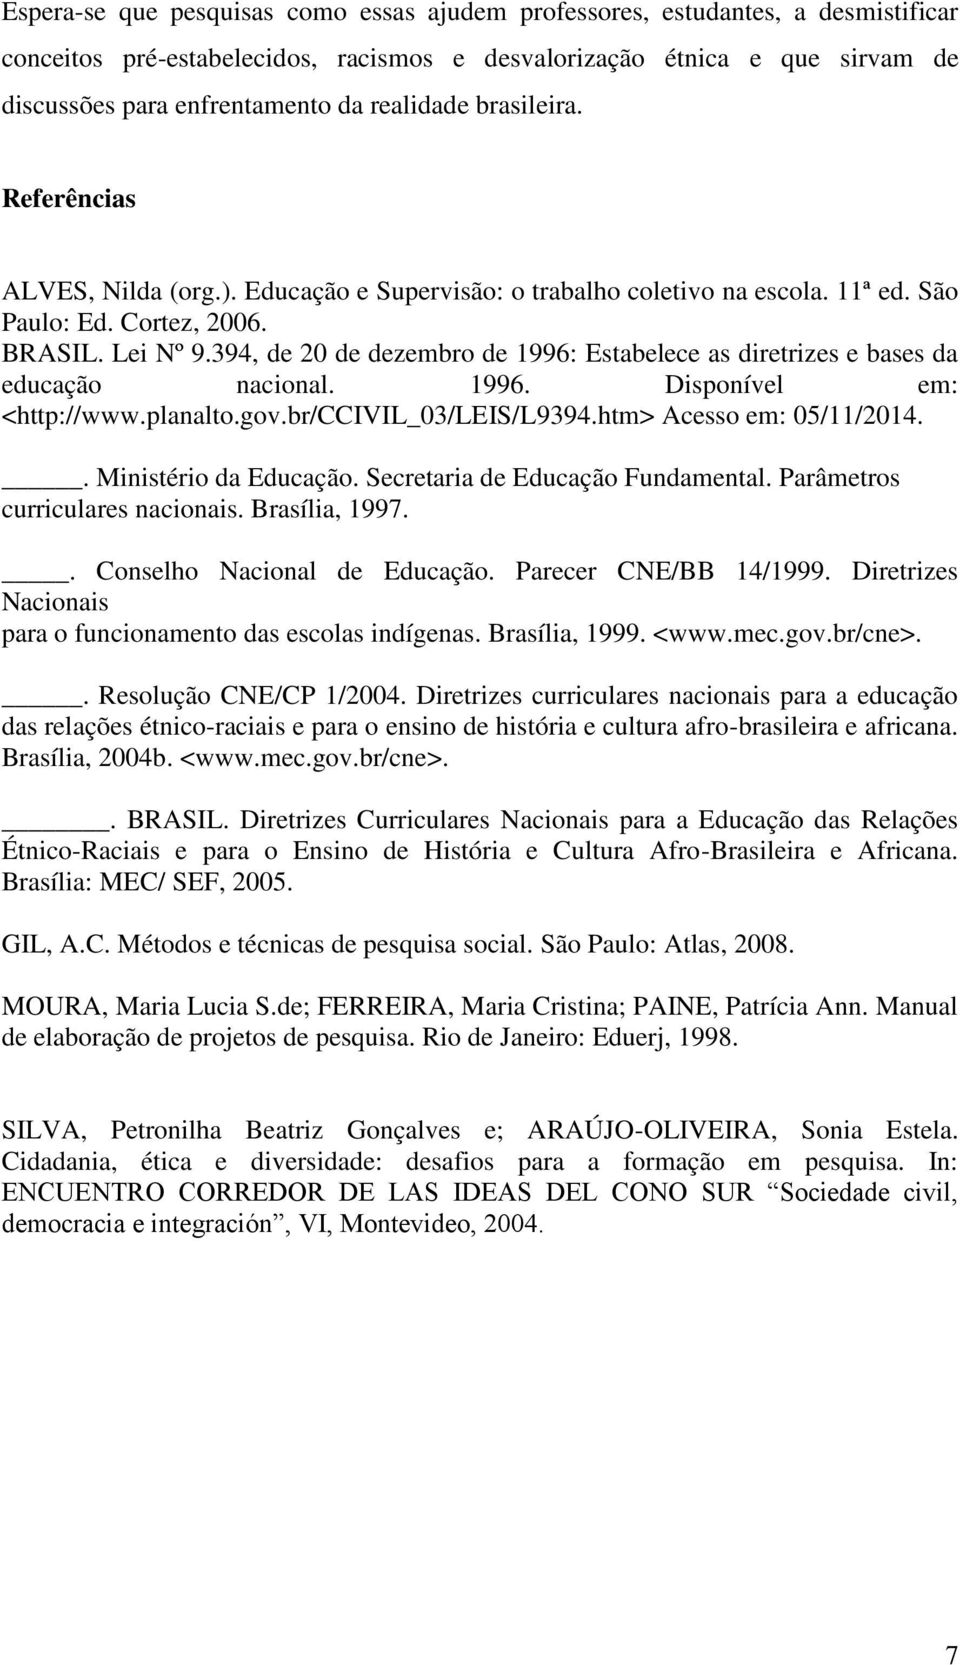 394, de 20 de dezembro de 1996: Estabelece as diretrizes e bases da educação nacional. 1996. Disponível em: <http://www.planalto.gov.br/ccivil_03/leis/l9394.htm> Acesso em: 05/11/2014.